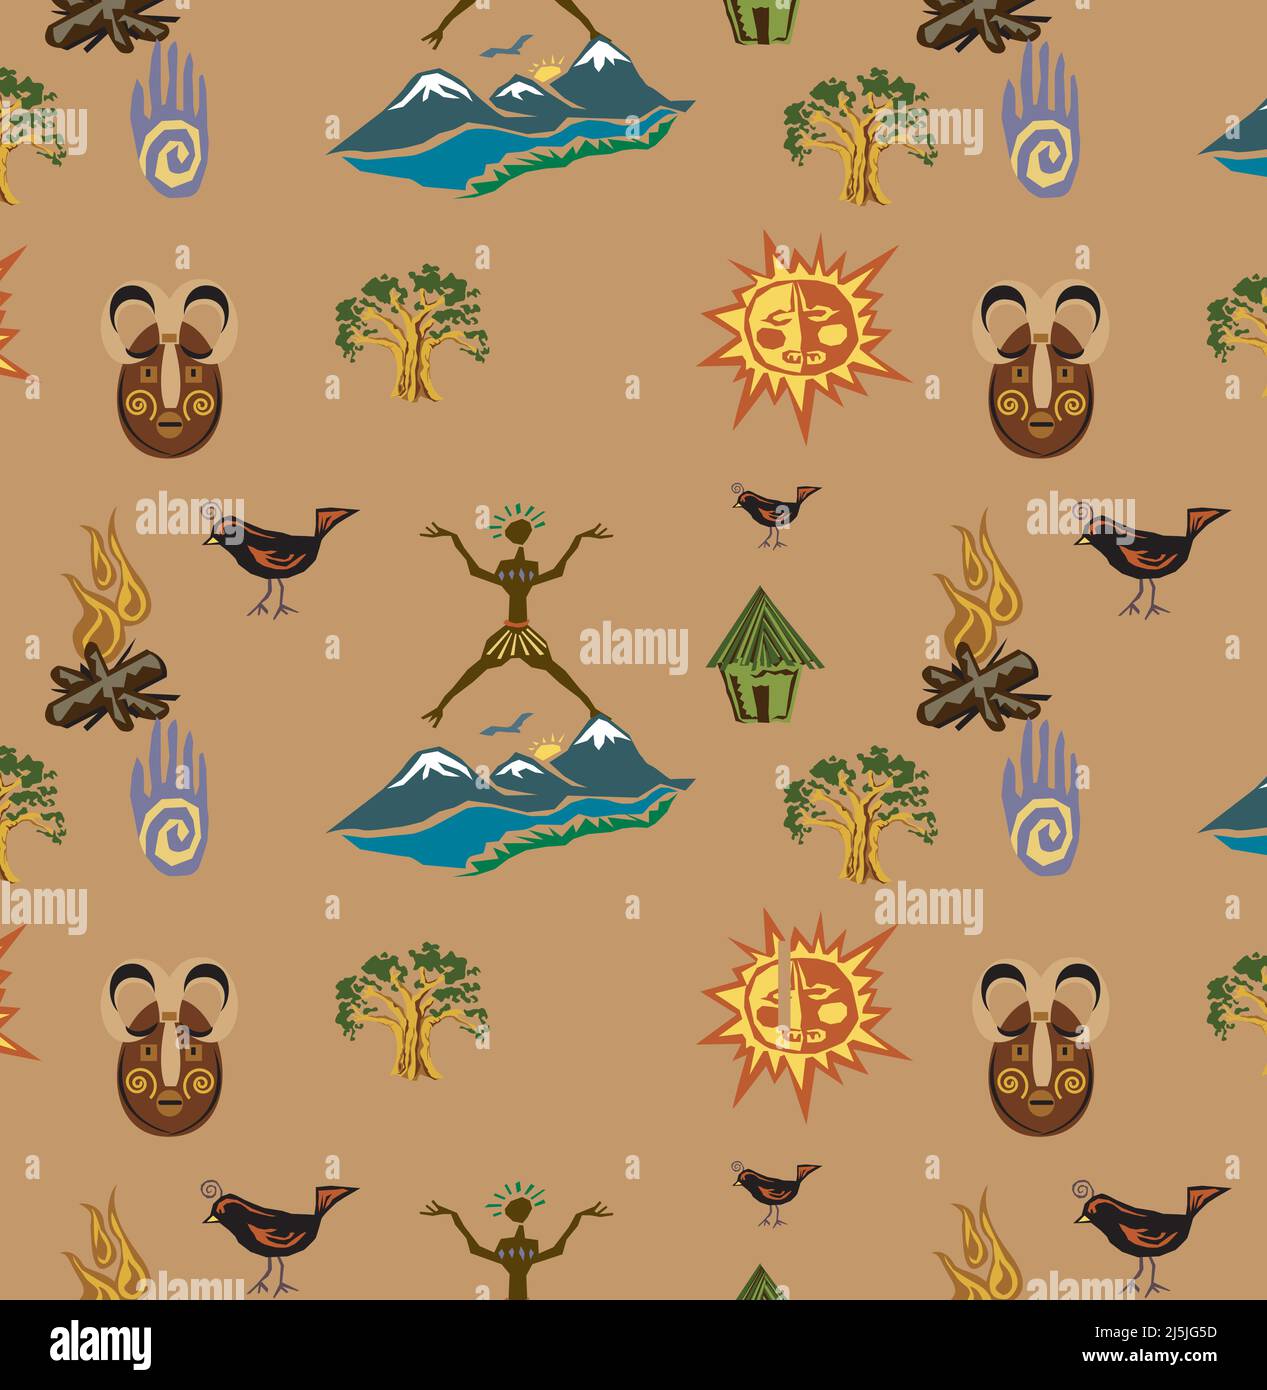 Vektorgrafik Stammesmuster. Für Bildschirmhintergrund, Hintergrund, Geschenkpapier, Tapete, Textil- und Oberflächengestaltung Stock Vektor